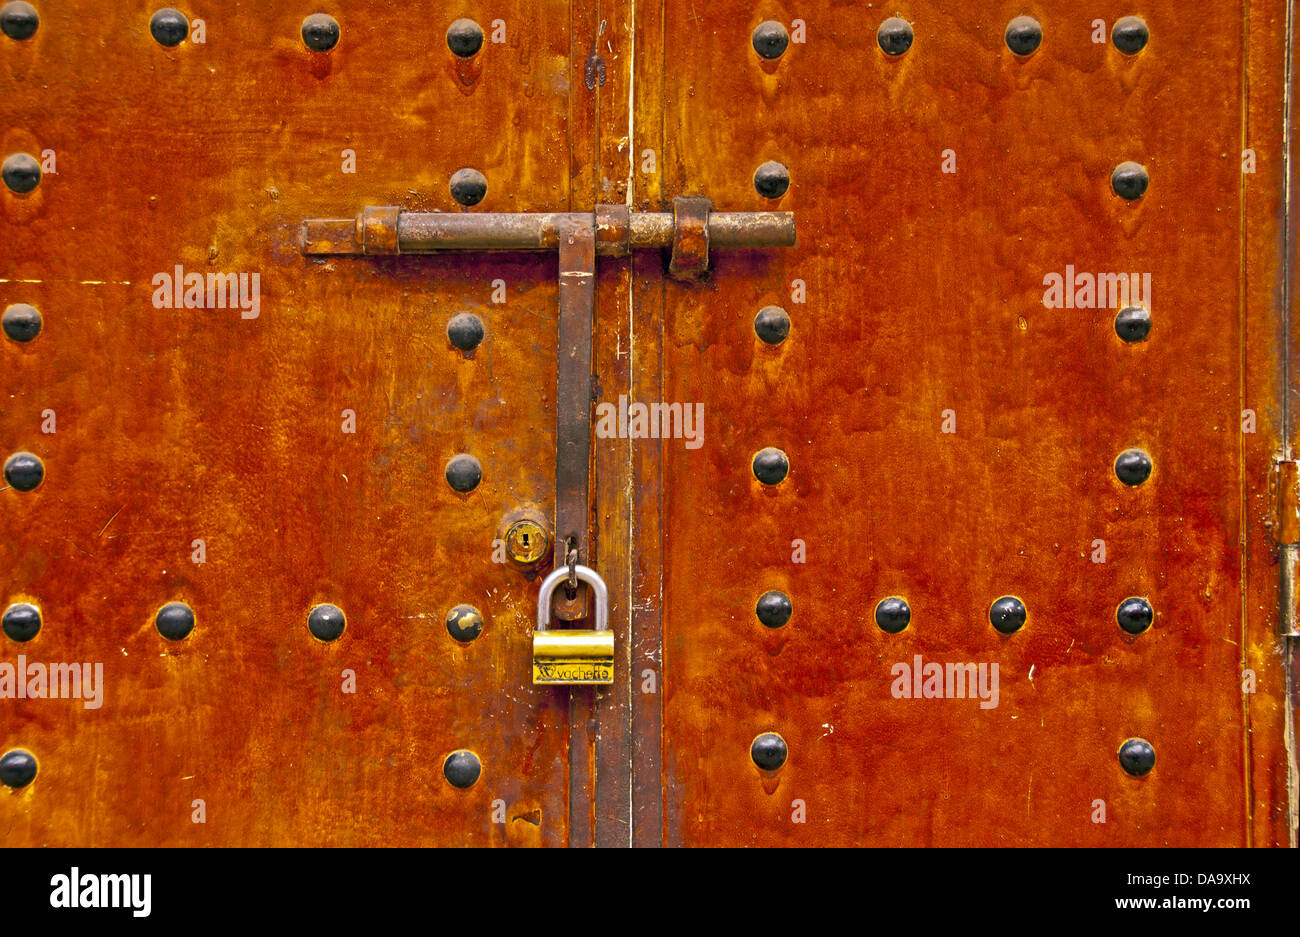 Africa, North Africa, old, Morocco, metal door, bolt, lock, metal, door Stock Photo